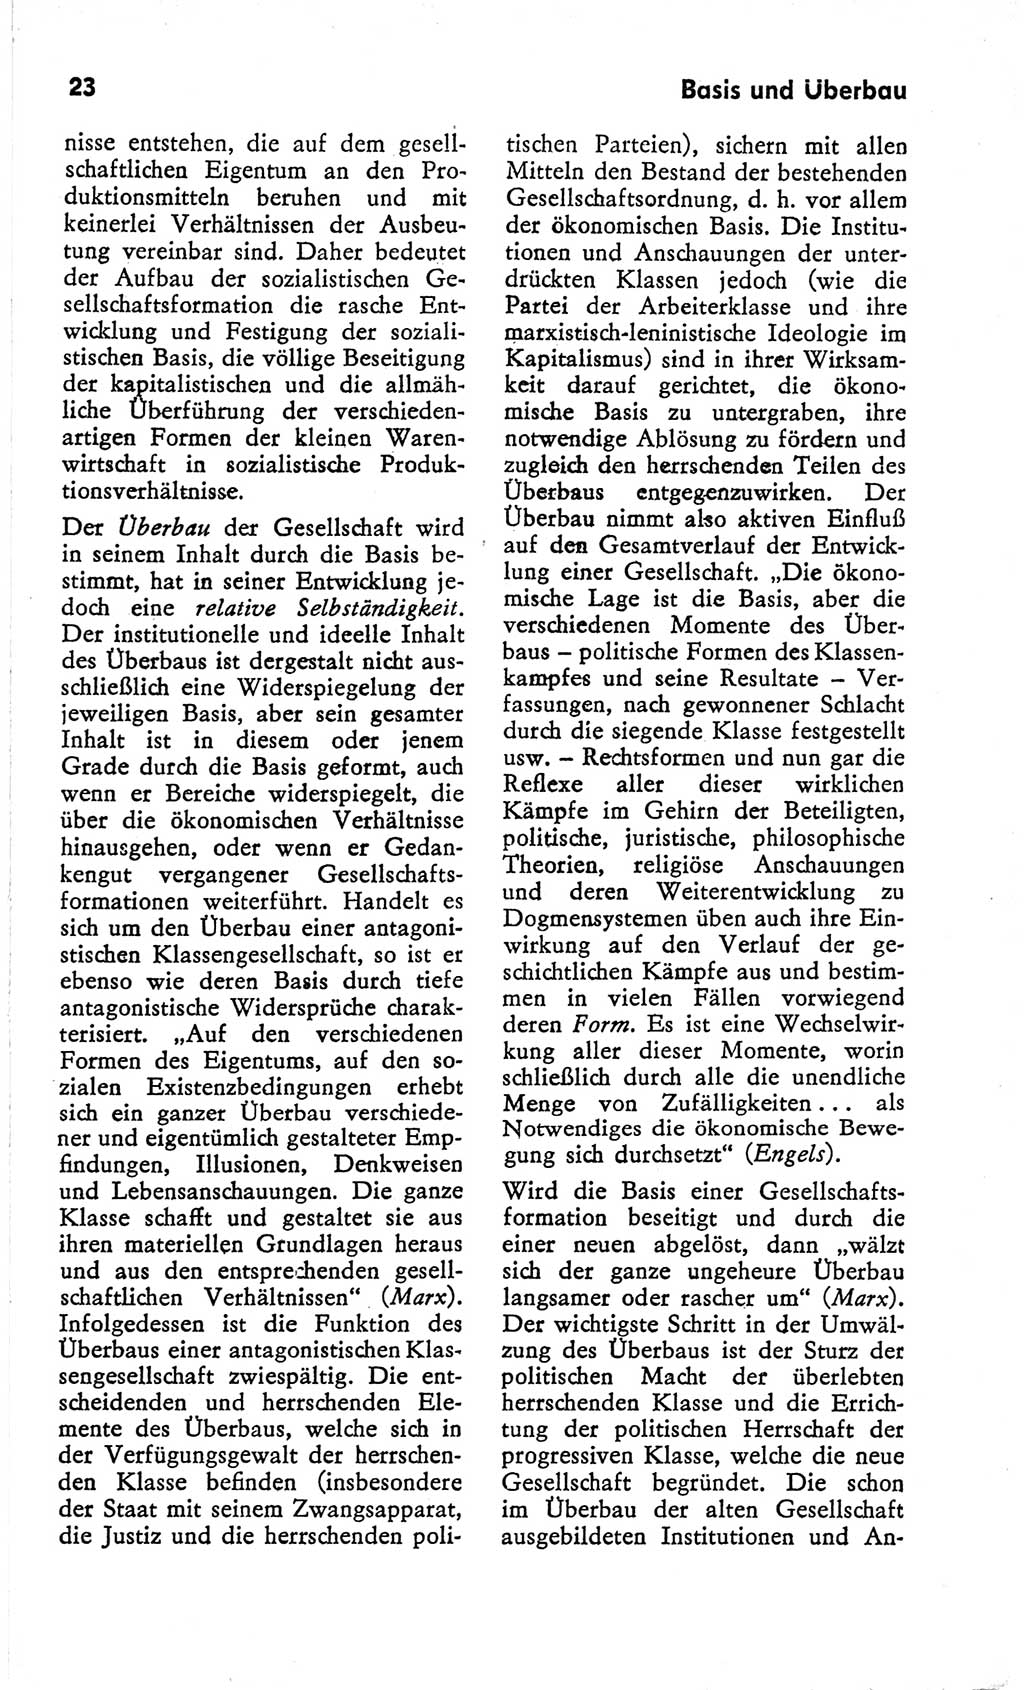 Kleines Wörterbuch der marxistisch-leninistischen Philosophie [Deutsche Demokratische Republik (DDR)] 1966, Seite 23 (Kl. Wb. ML Phil. DDR 1966, S. 23)